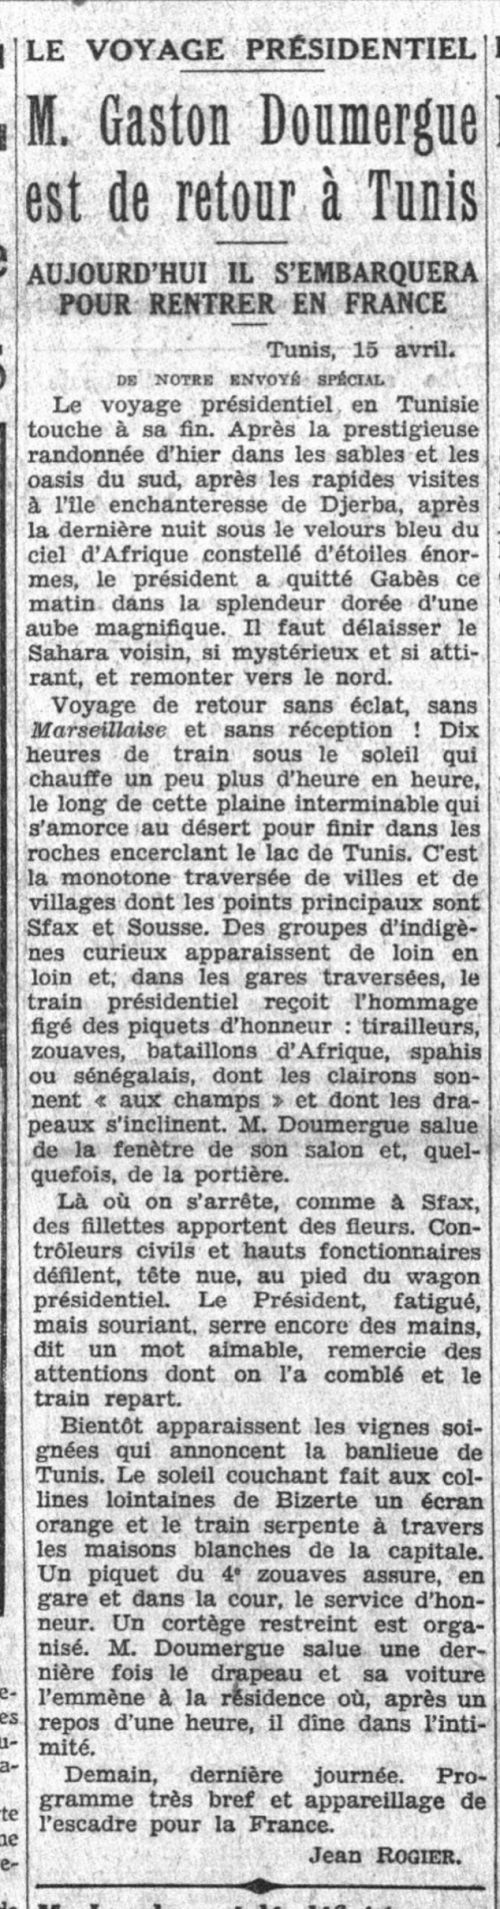 Le Petit Parisien du 16-04-1931 (Gallica.bnf.fr)